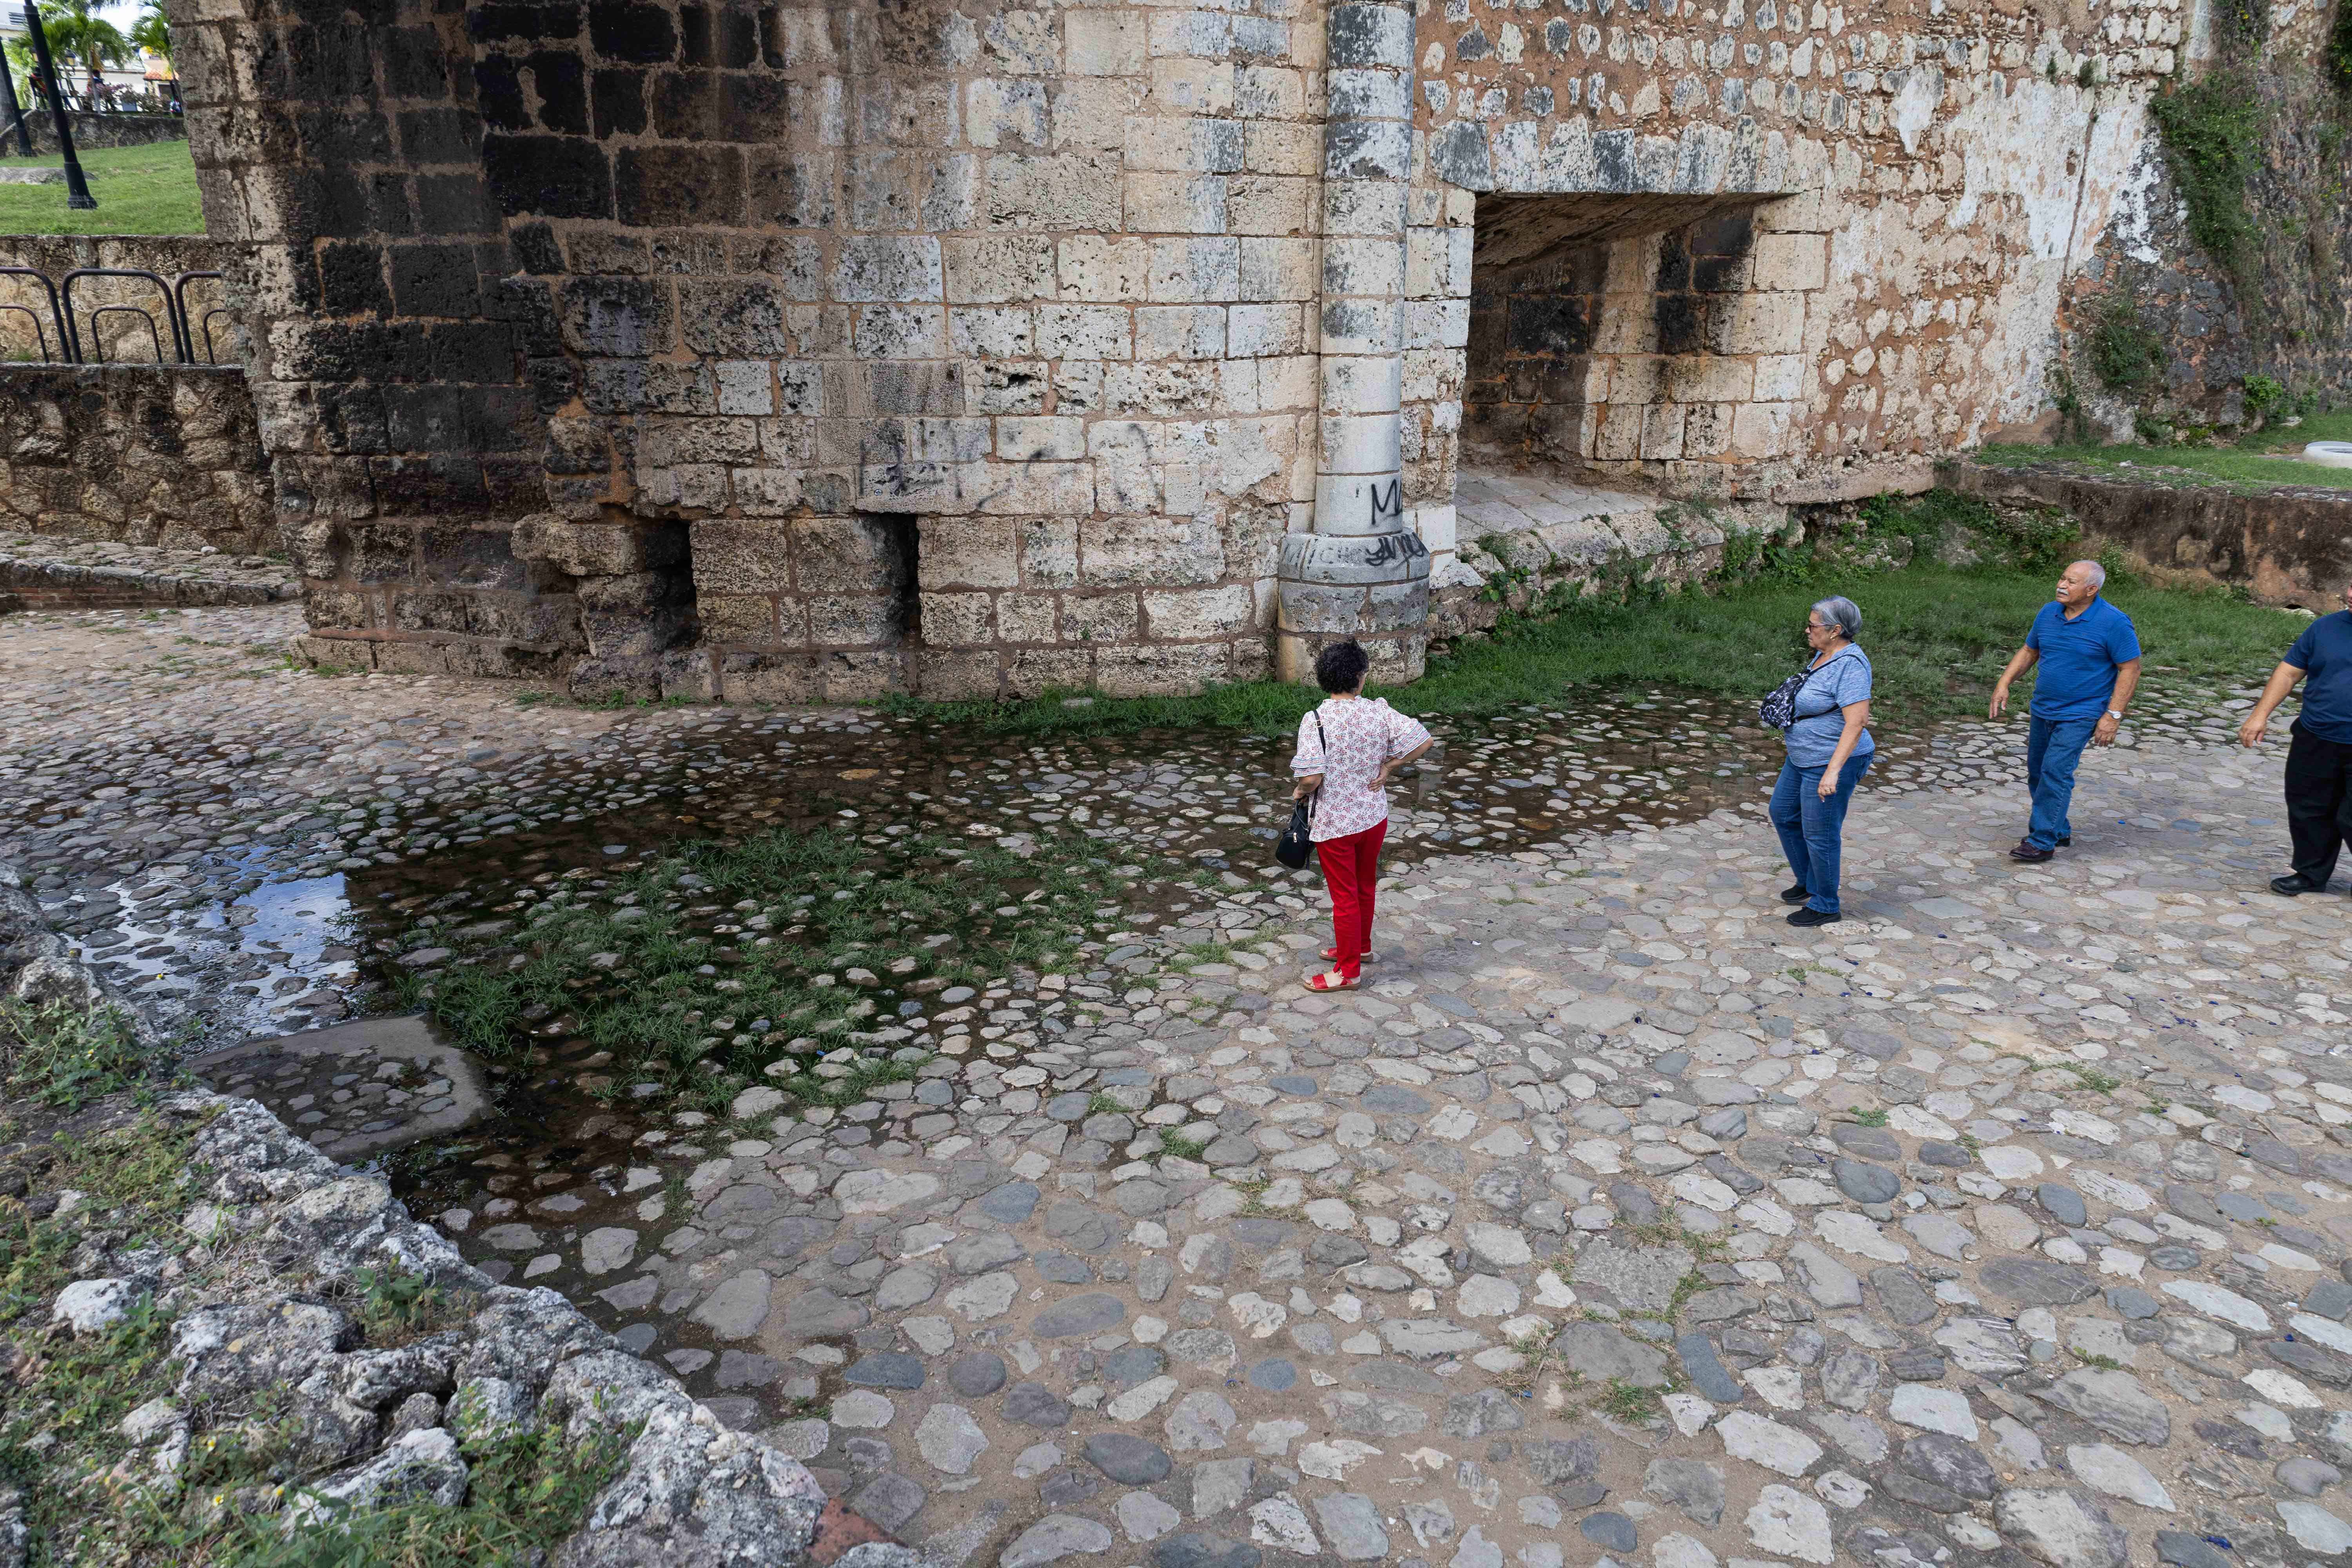 Turistas observan el lugar por donde brota agua de la que se devuelve al no encontrar salida.